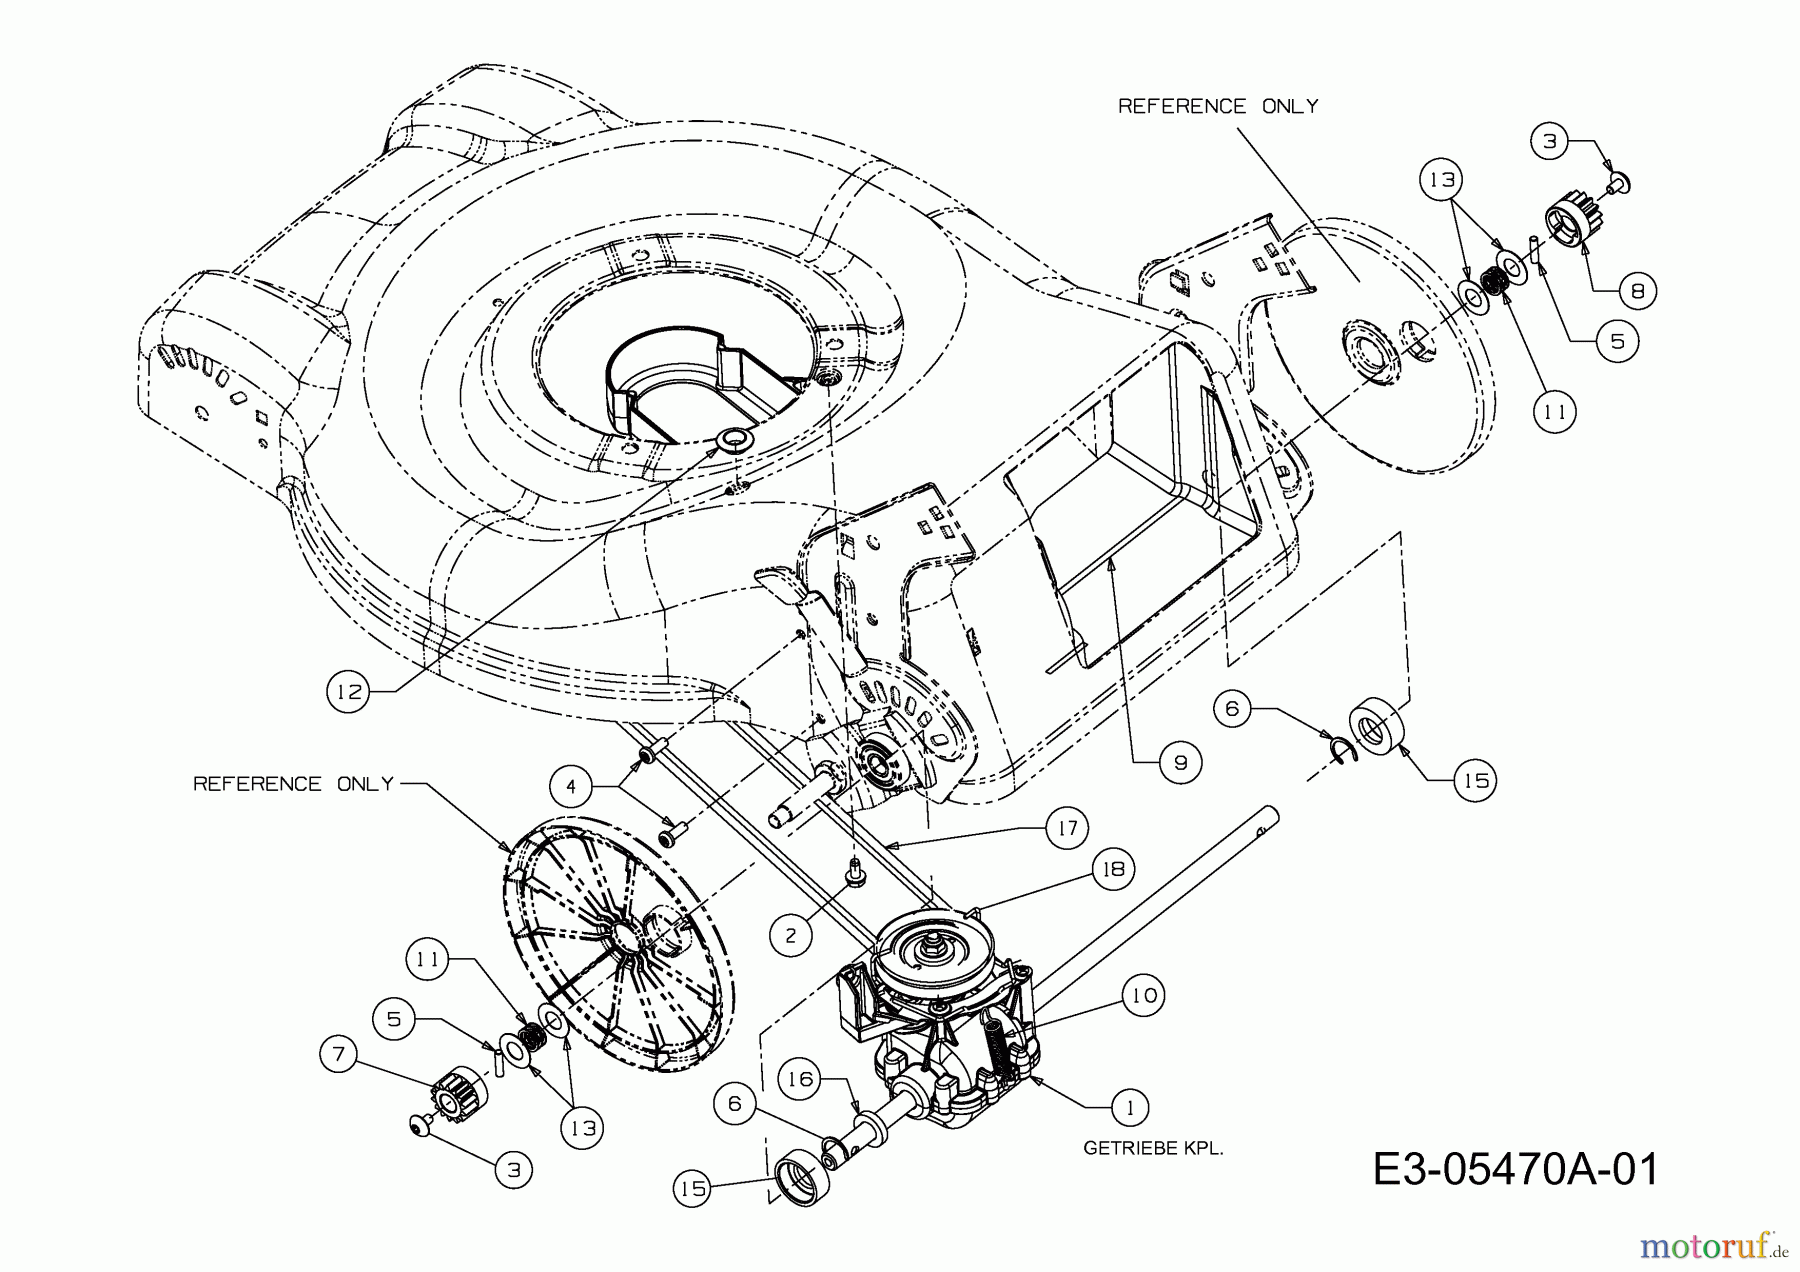  MTD Motormäher mit Antrieb 46 SPO 12D-J2JD600  (2010) Getriebe